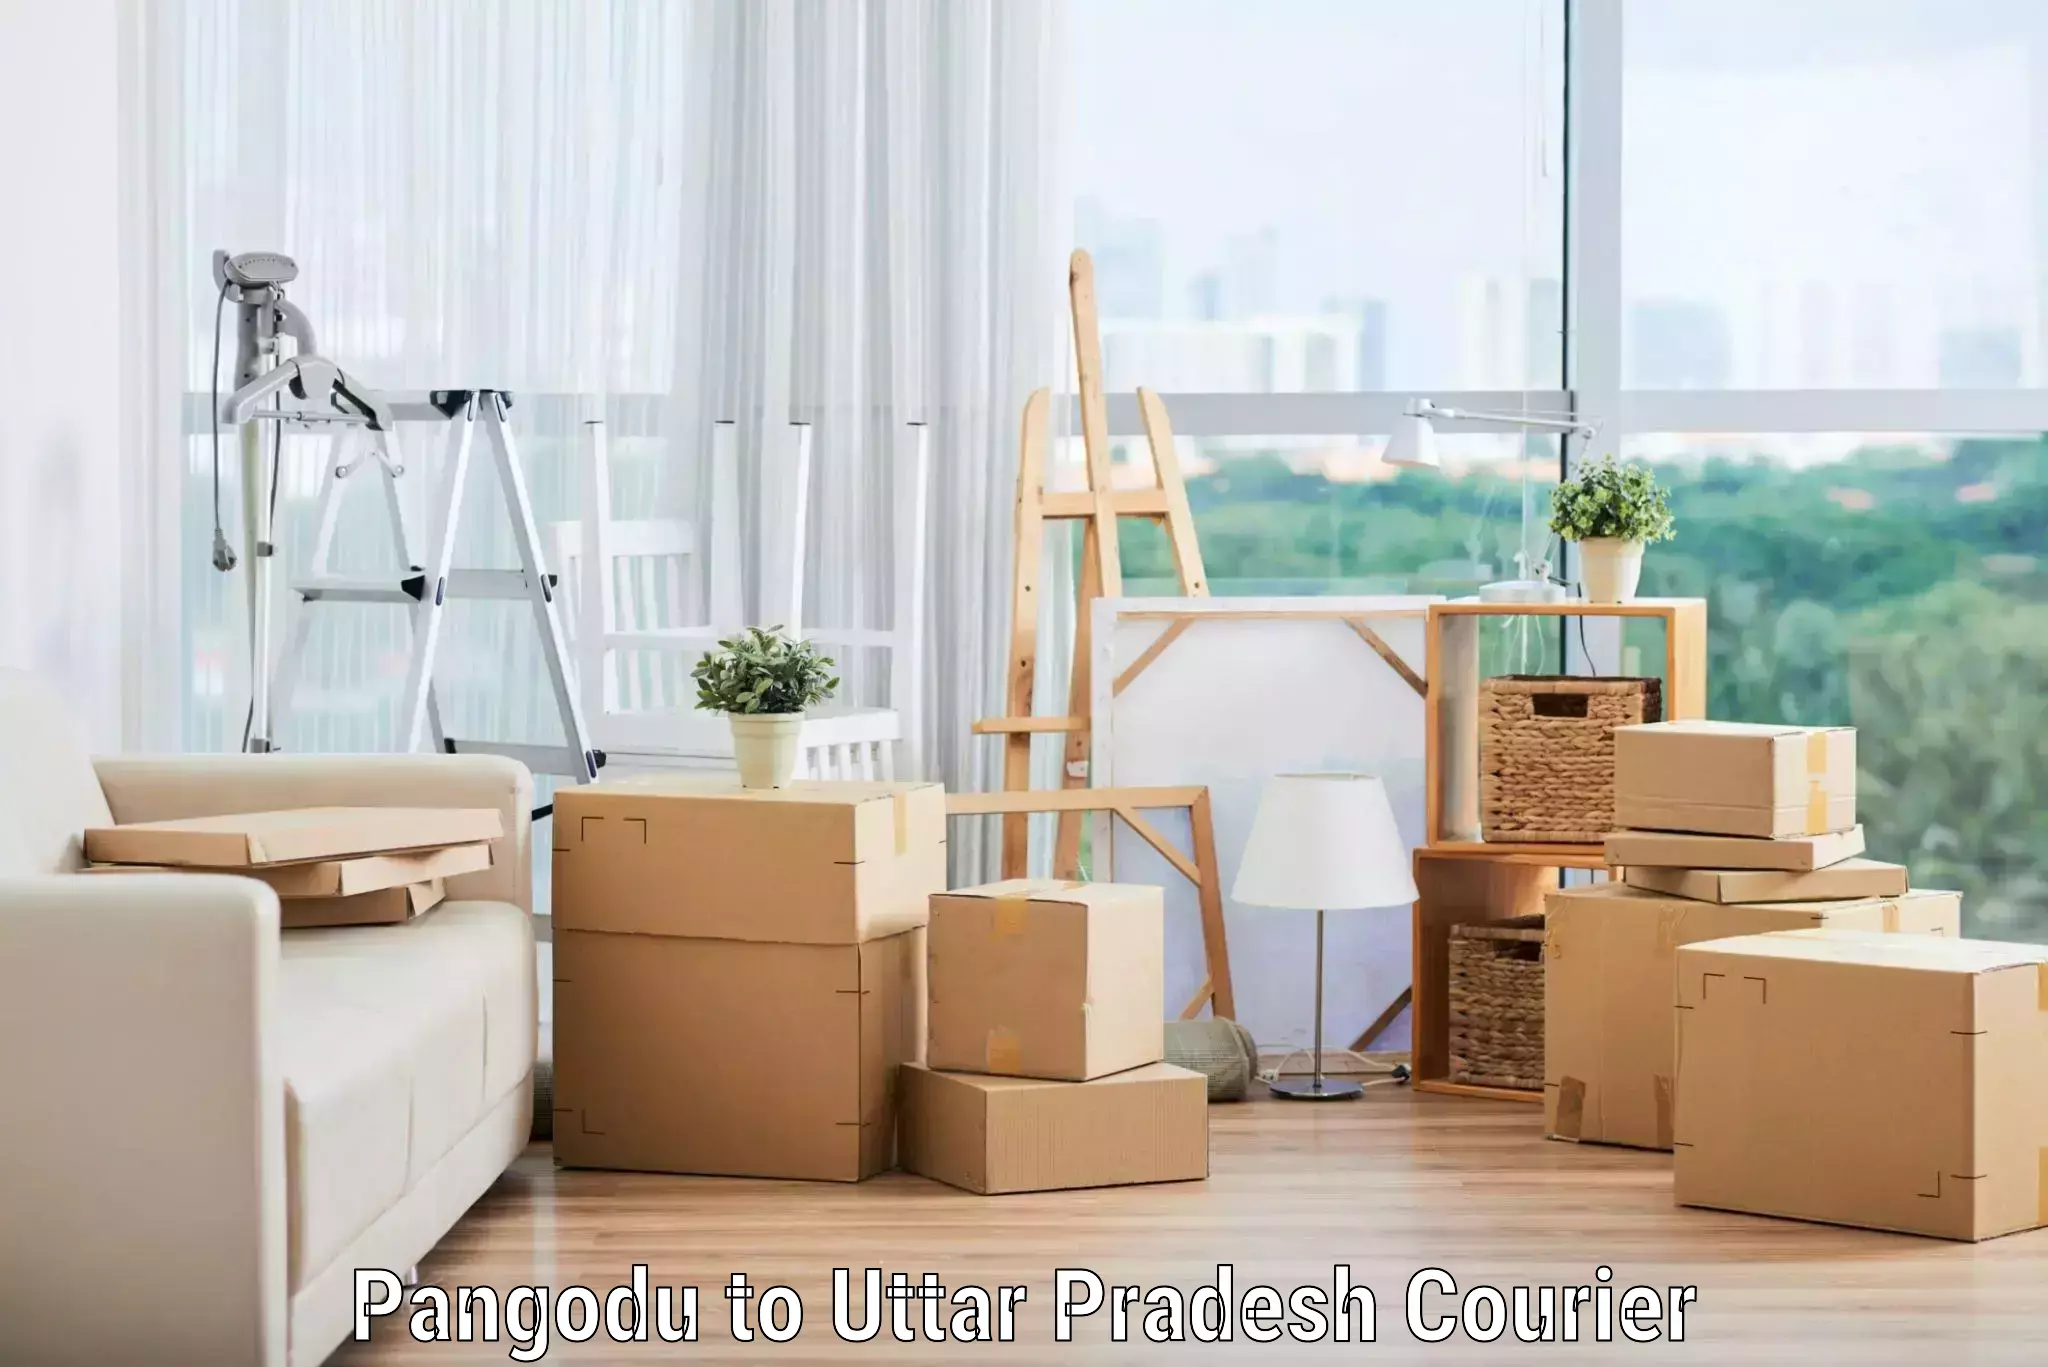 Furniture moving experts Pangodu to Uttar Pradesh